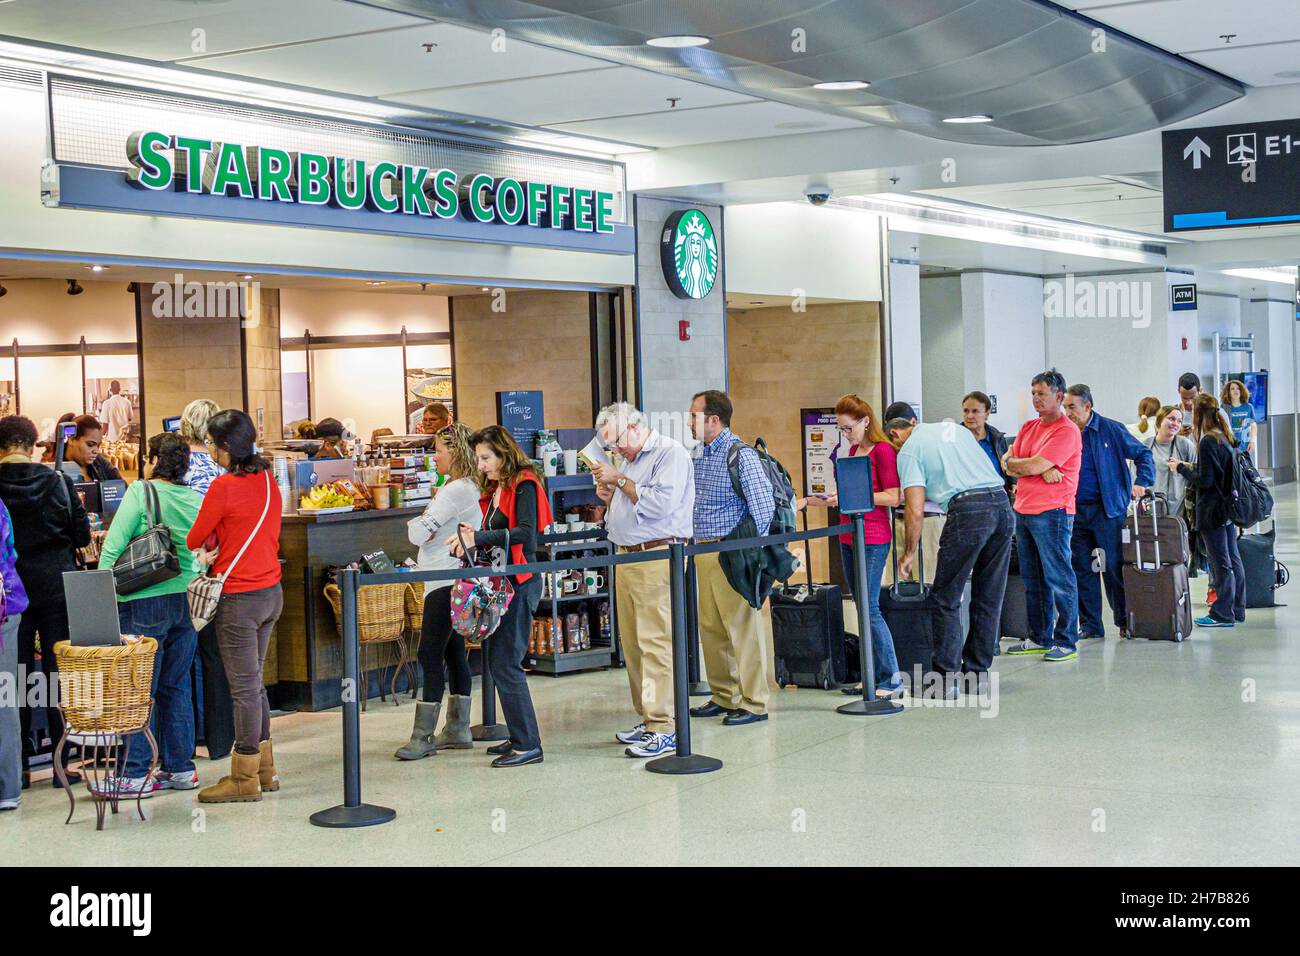 Miami Florida, International Airport MIA, innen Terminal Gate, Starbucks Coffee Counter lange Schlange Gäste warten auf Bestellung Stockfoto